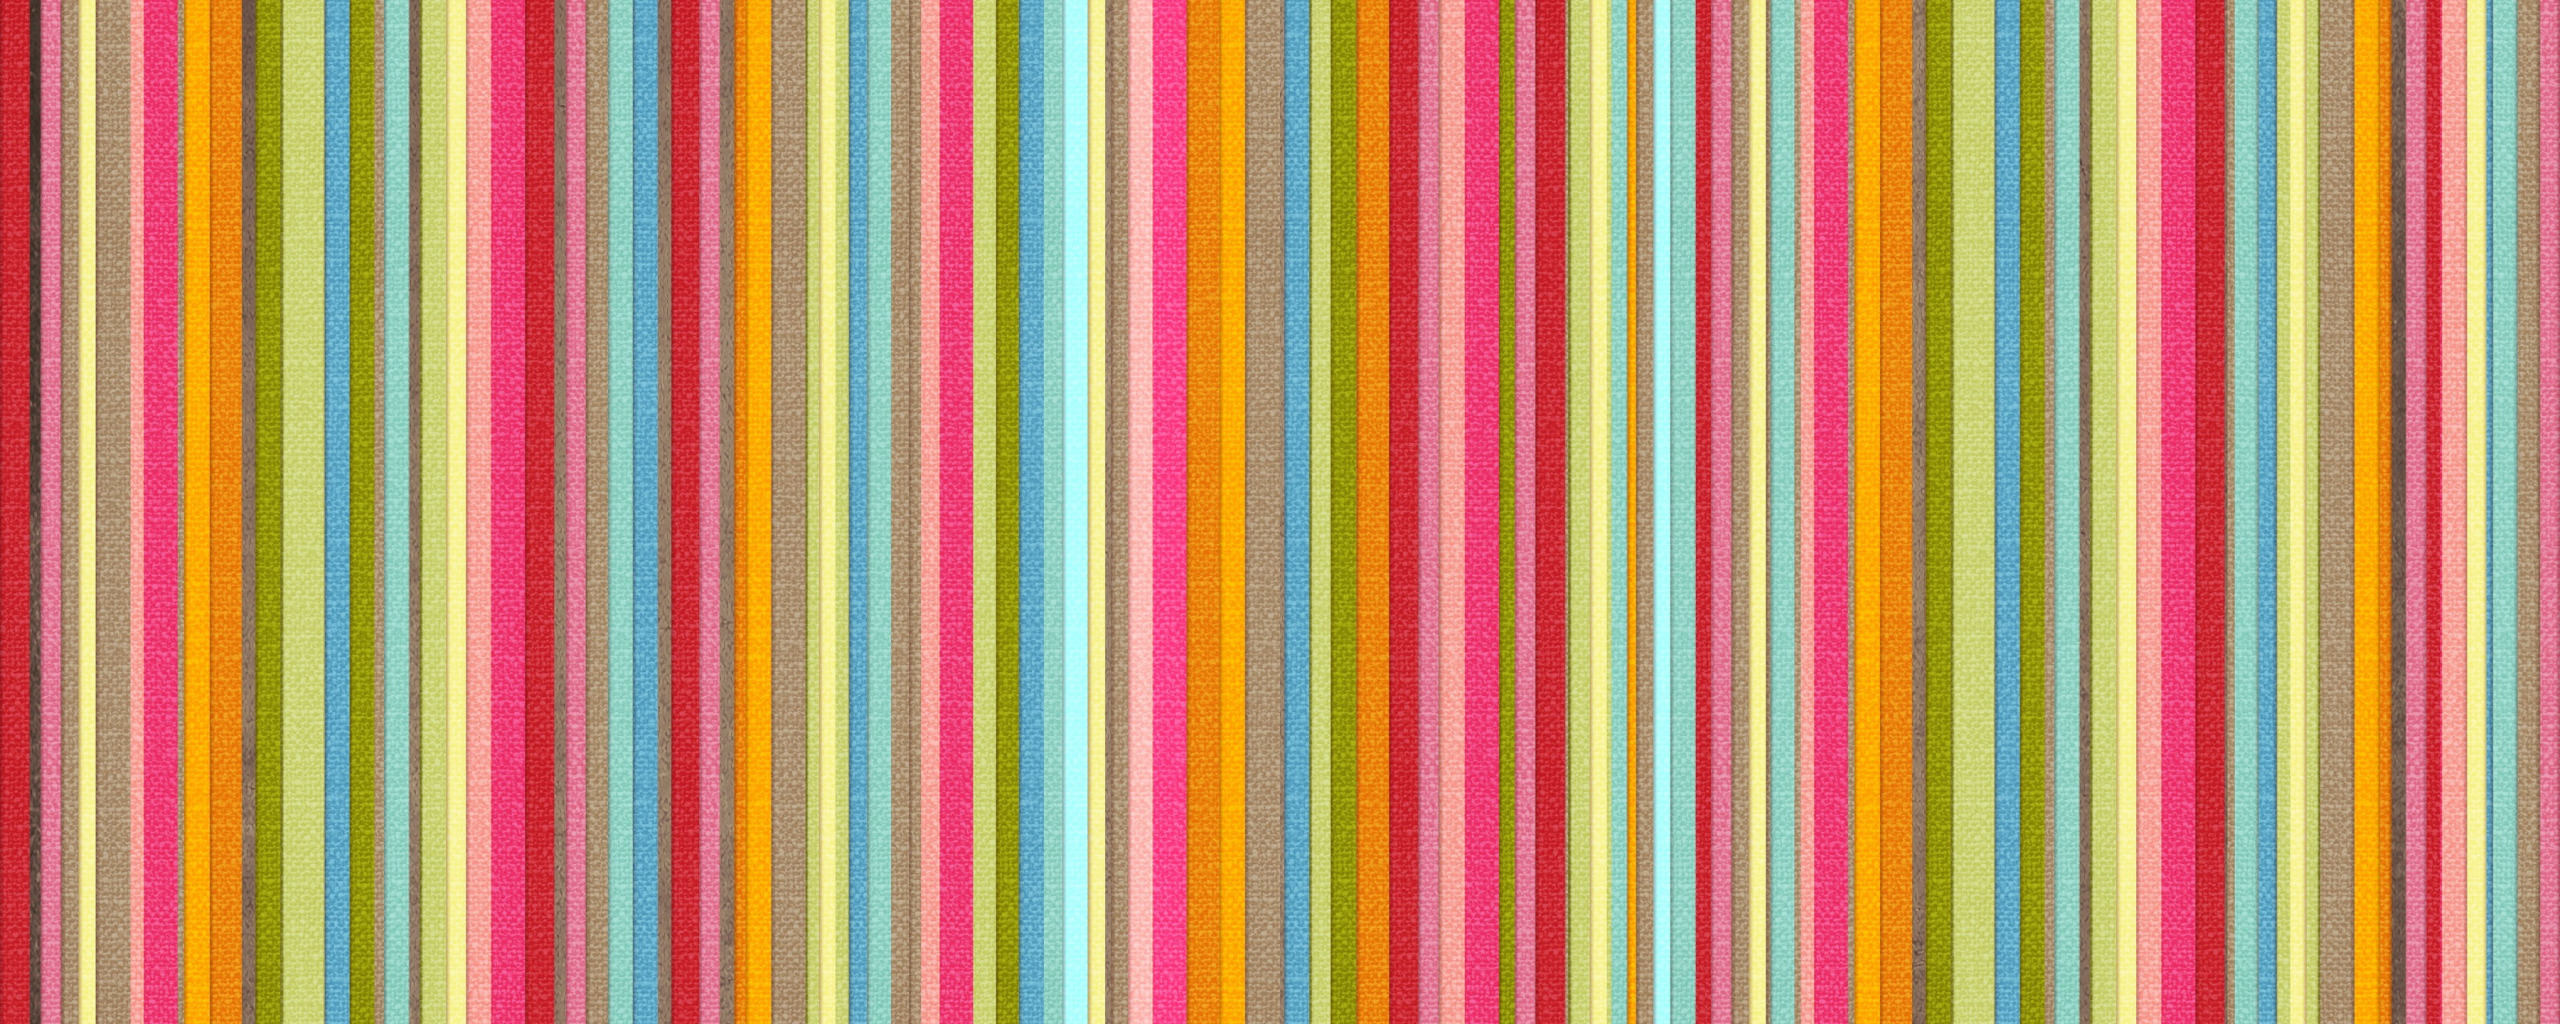 Разноцветные полосы на прозрачном фоне